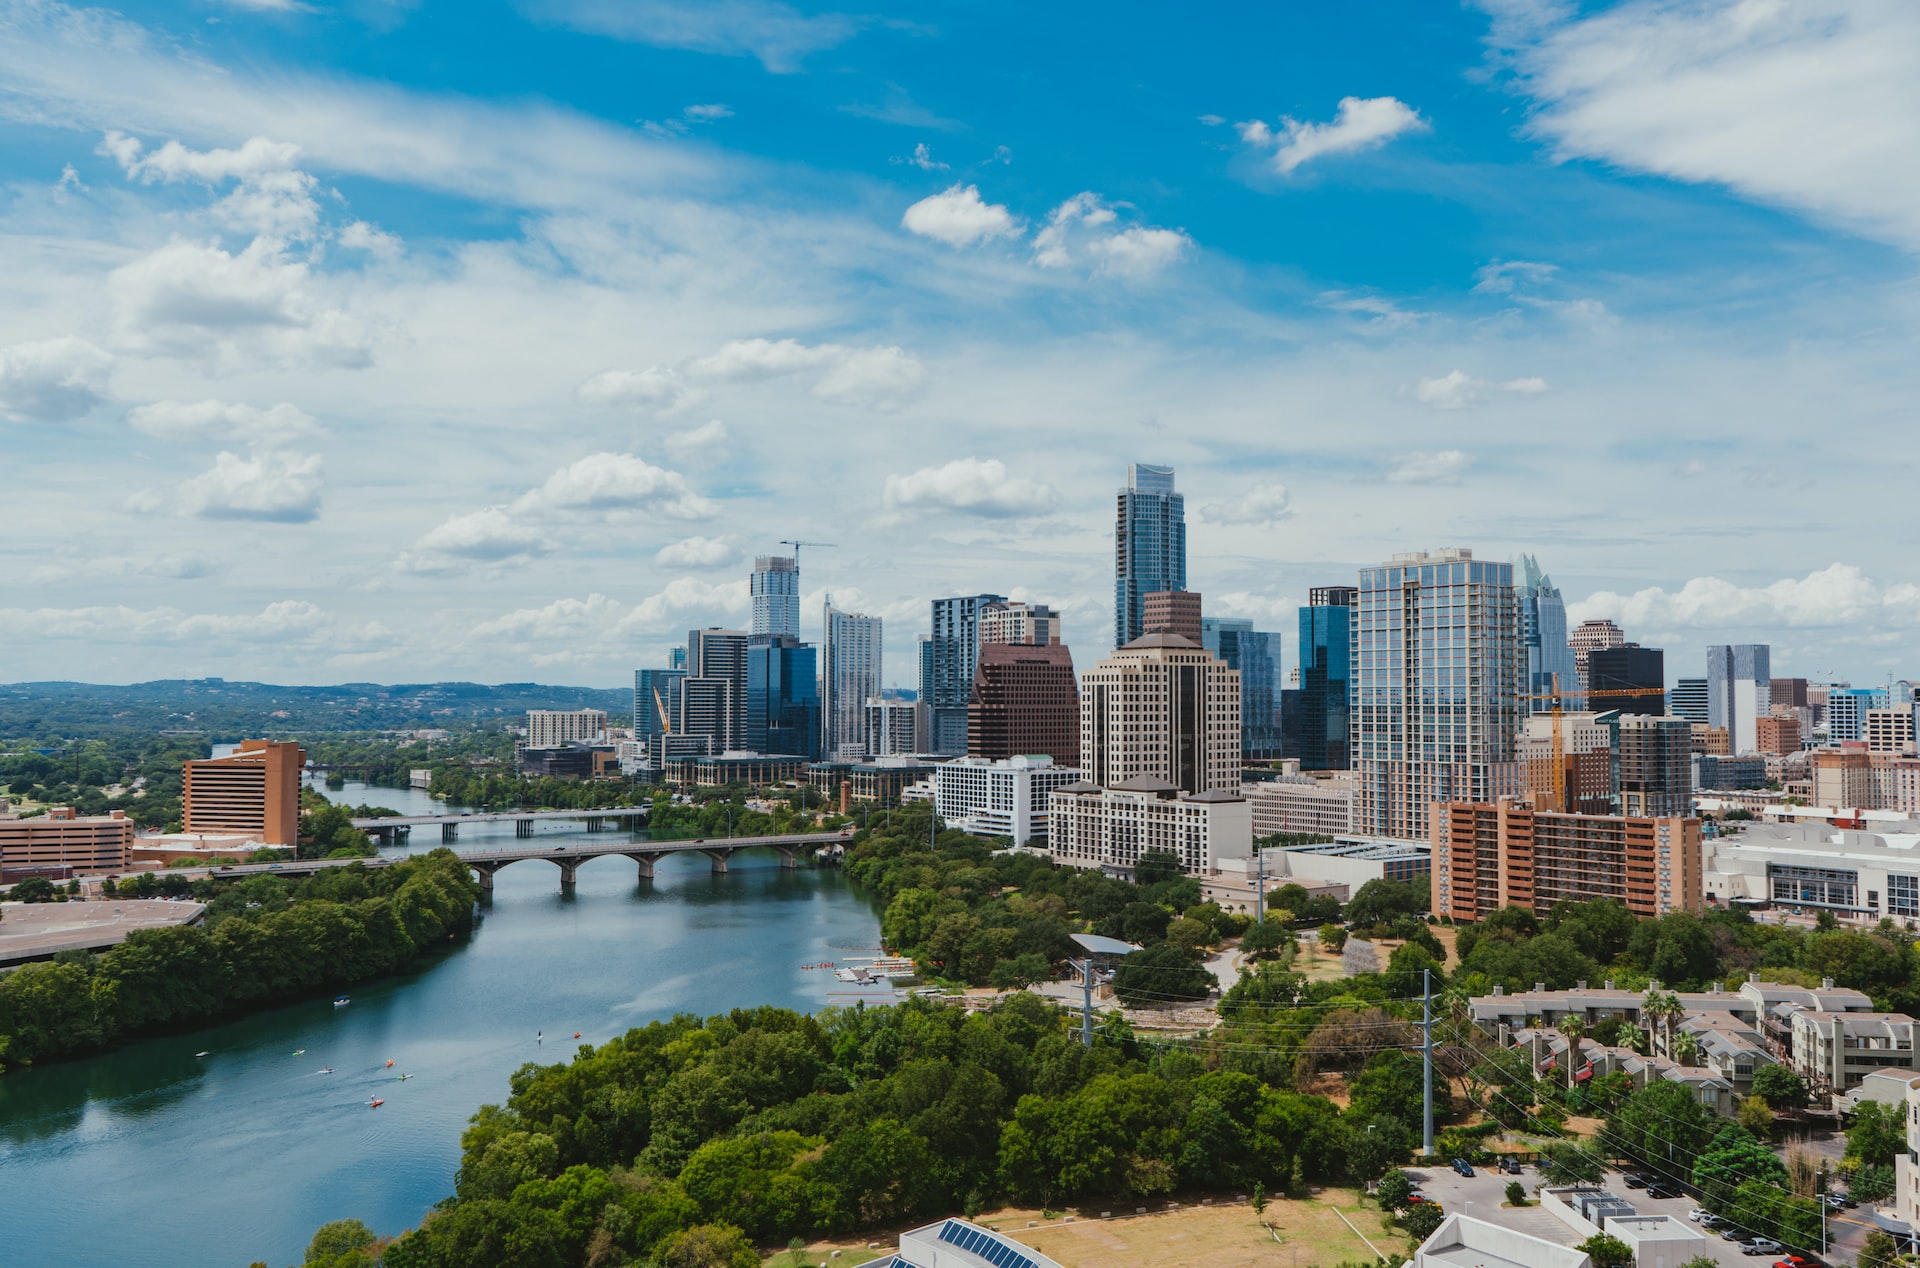 City view of Austin, Texas